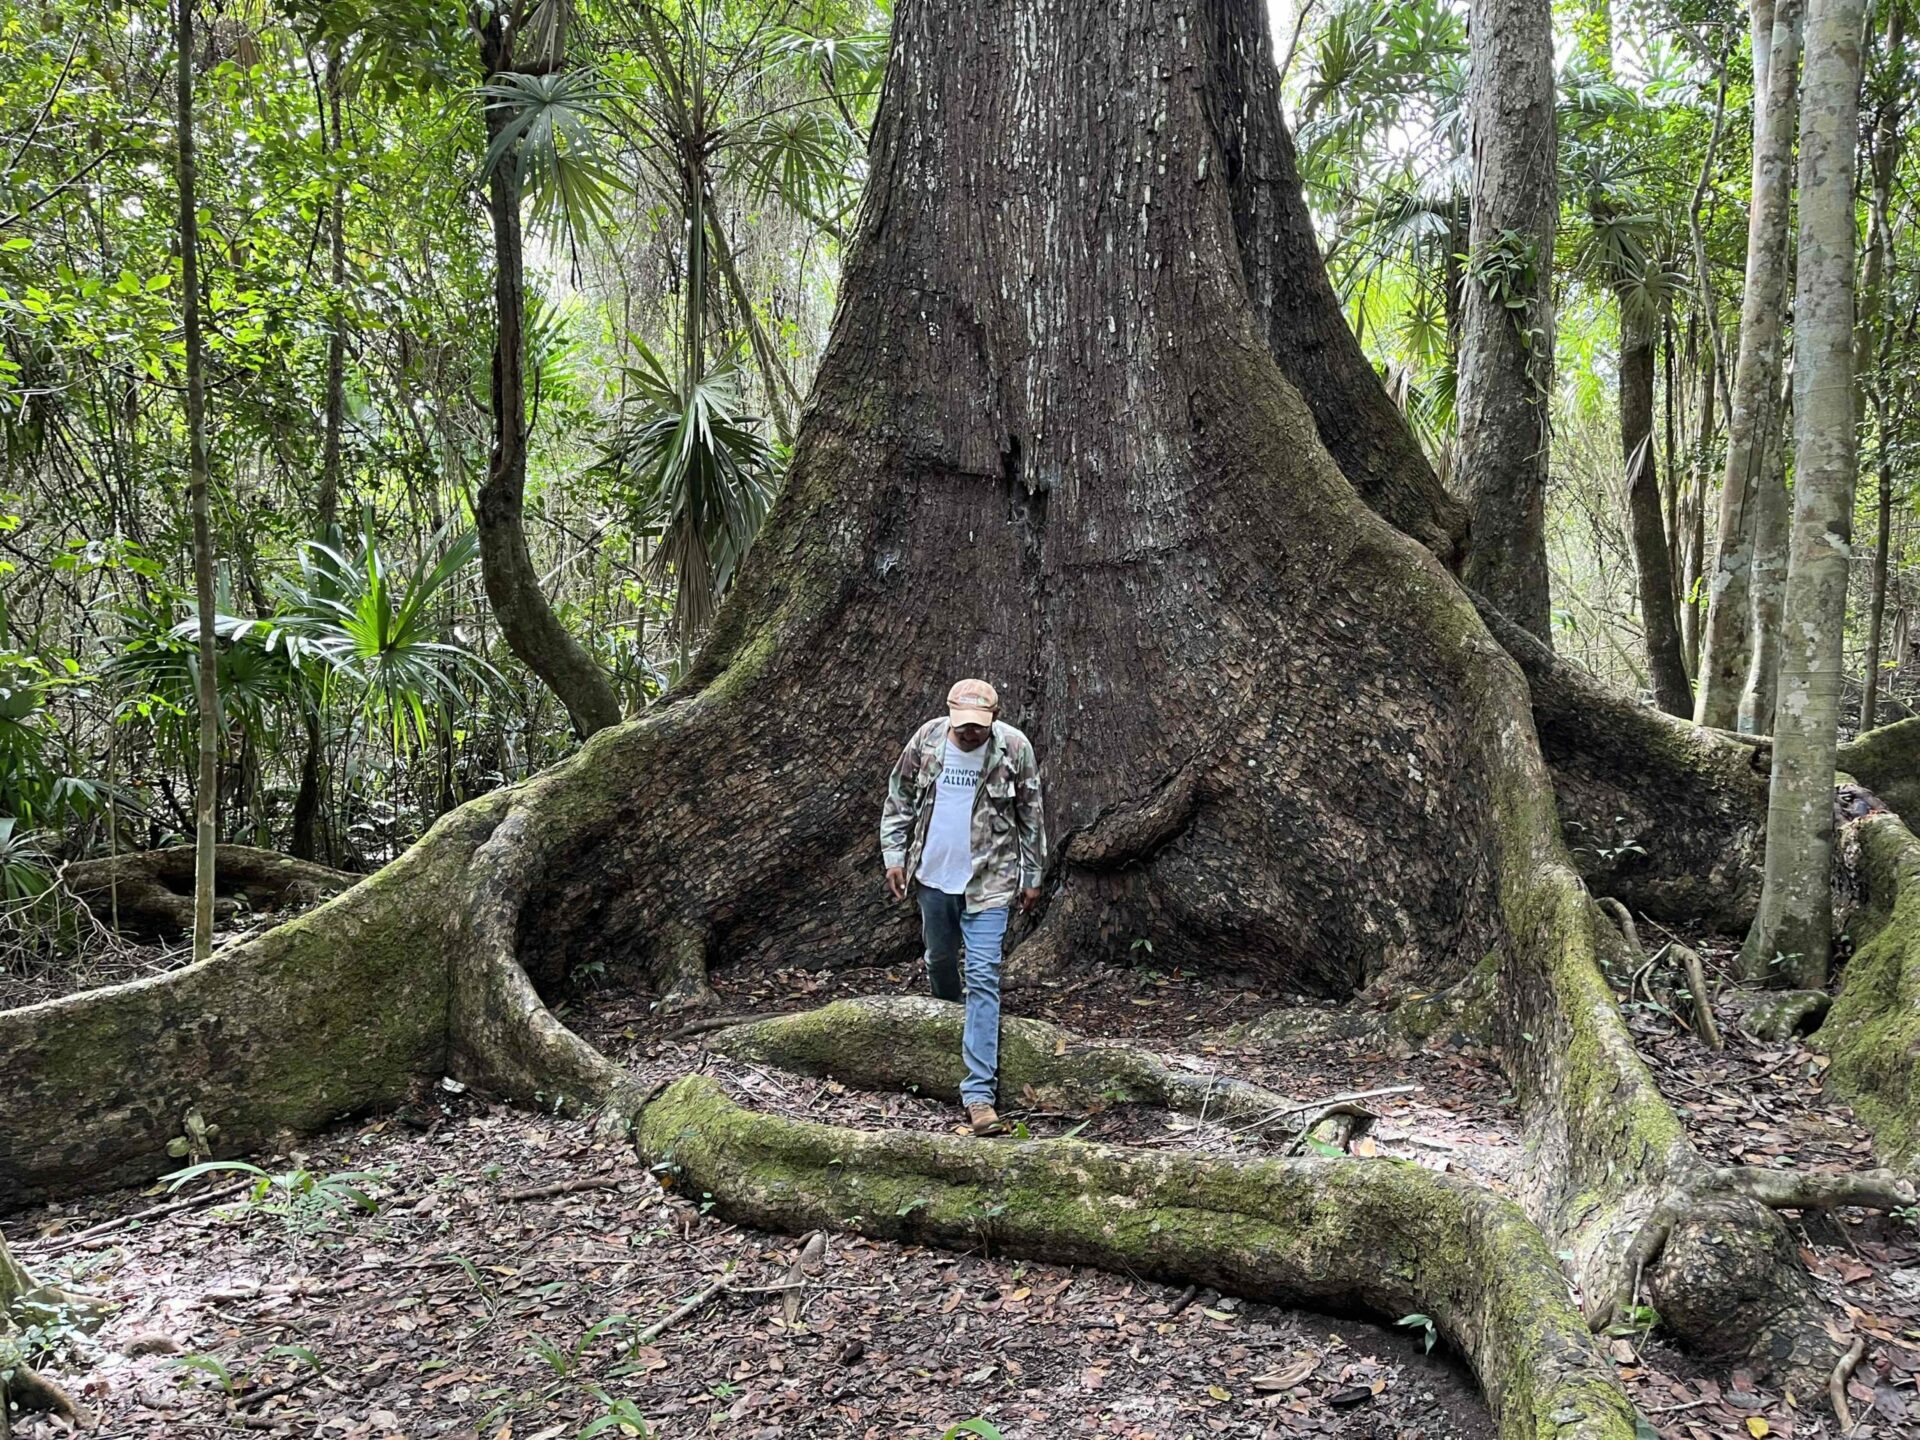 Noh Bec, el hogar de las caobas centenarias, busca un futuro más allá de su árbol emblema